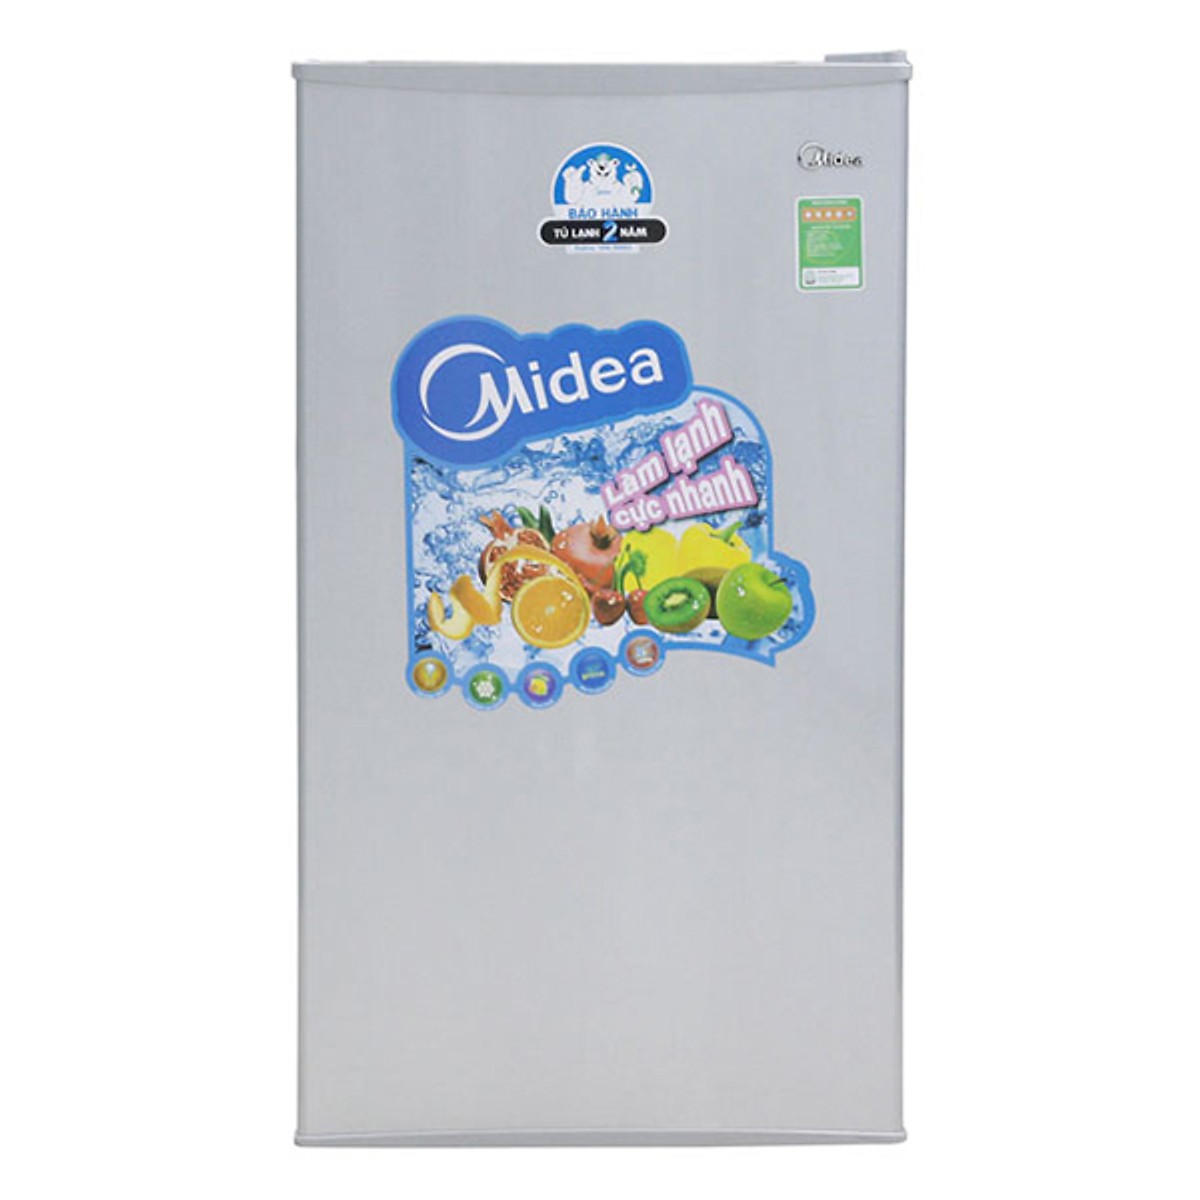 Tủ lạnh mini Midea 93lit giá rẻ